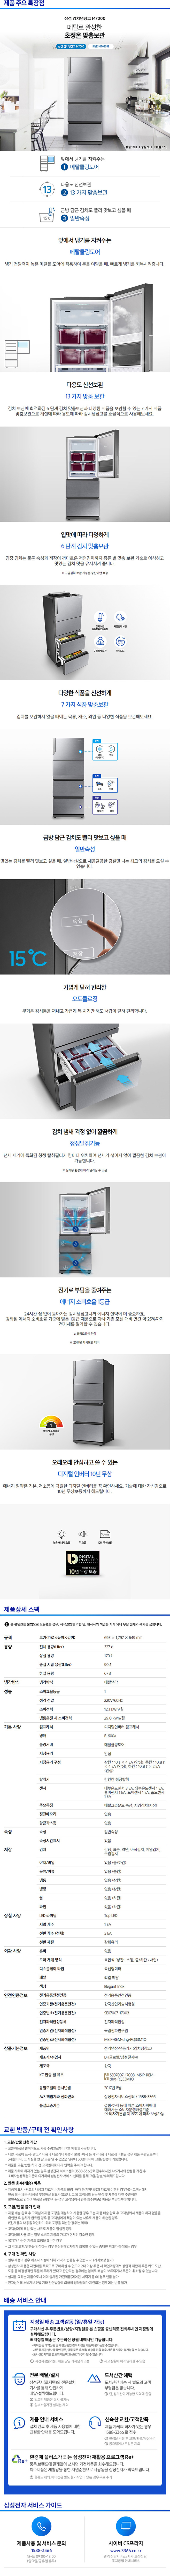 딜라이브 - 삼성 지펠아삭김치냉장고 (RQ33M70B5S8) 상세보기